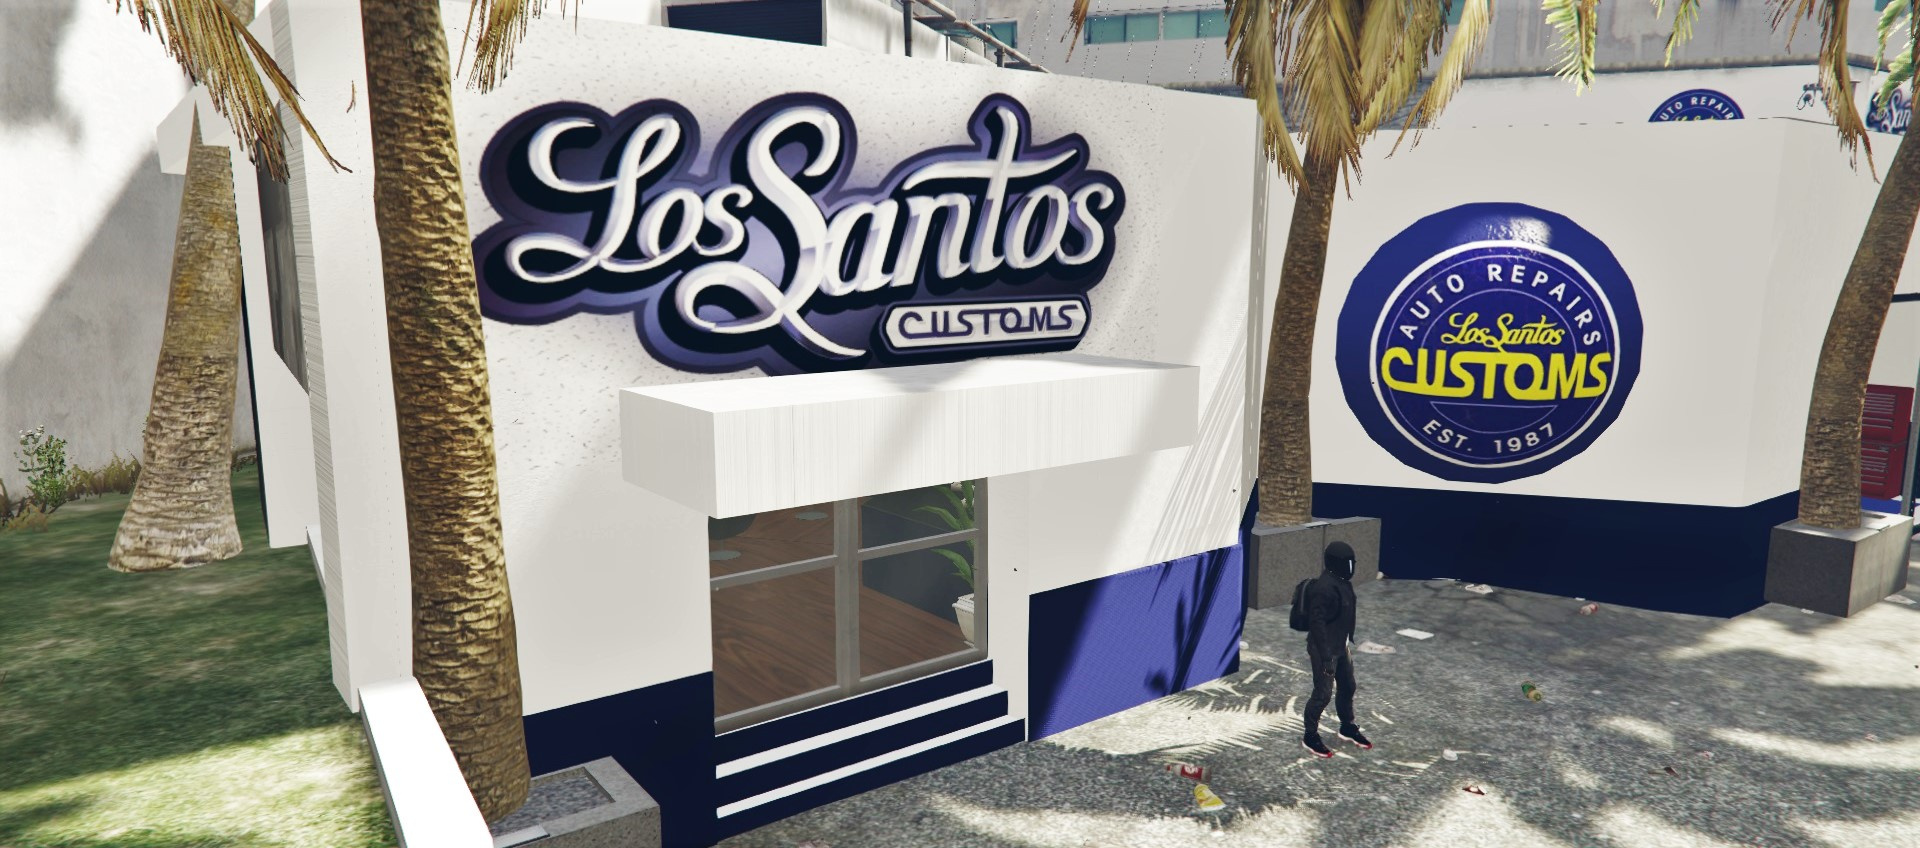 Los Santos Customs 507pty